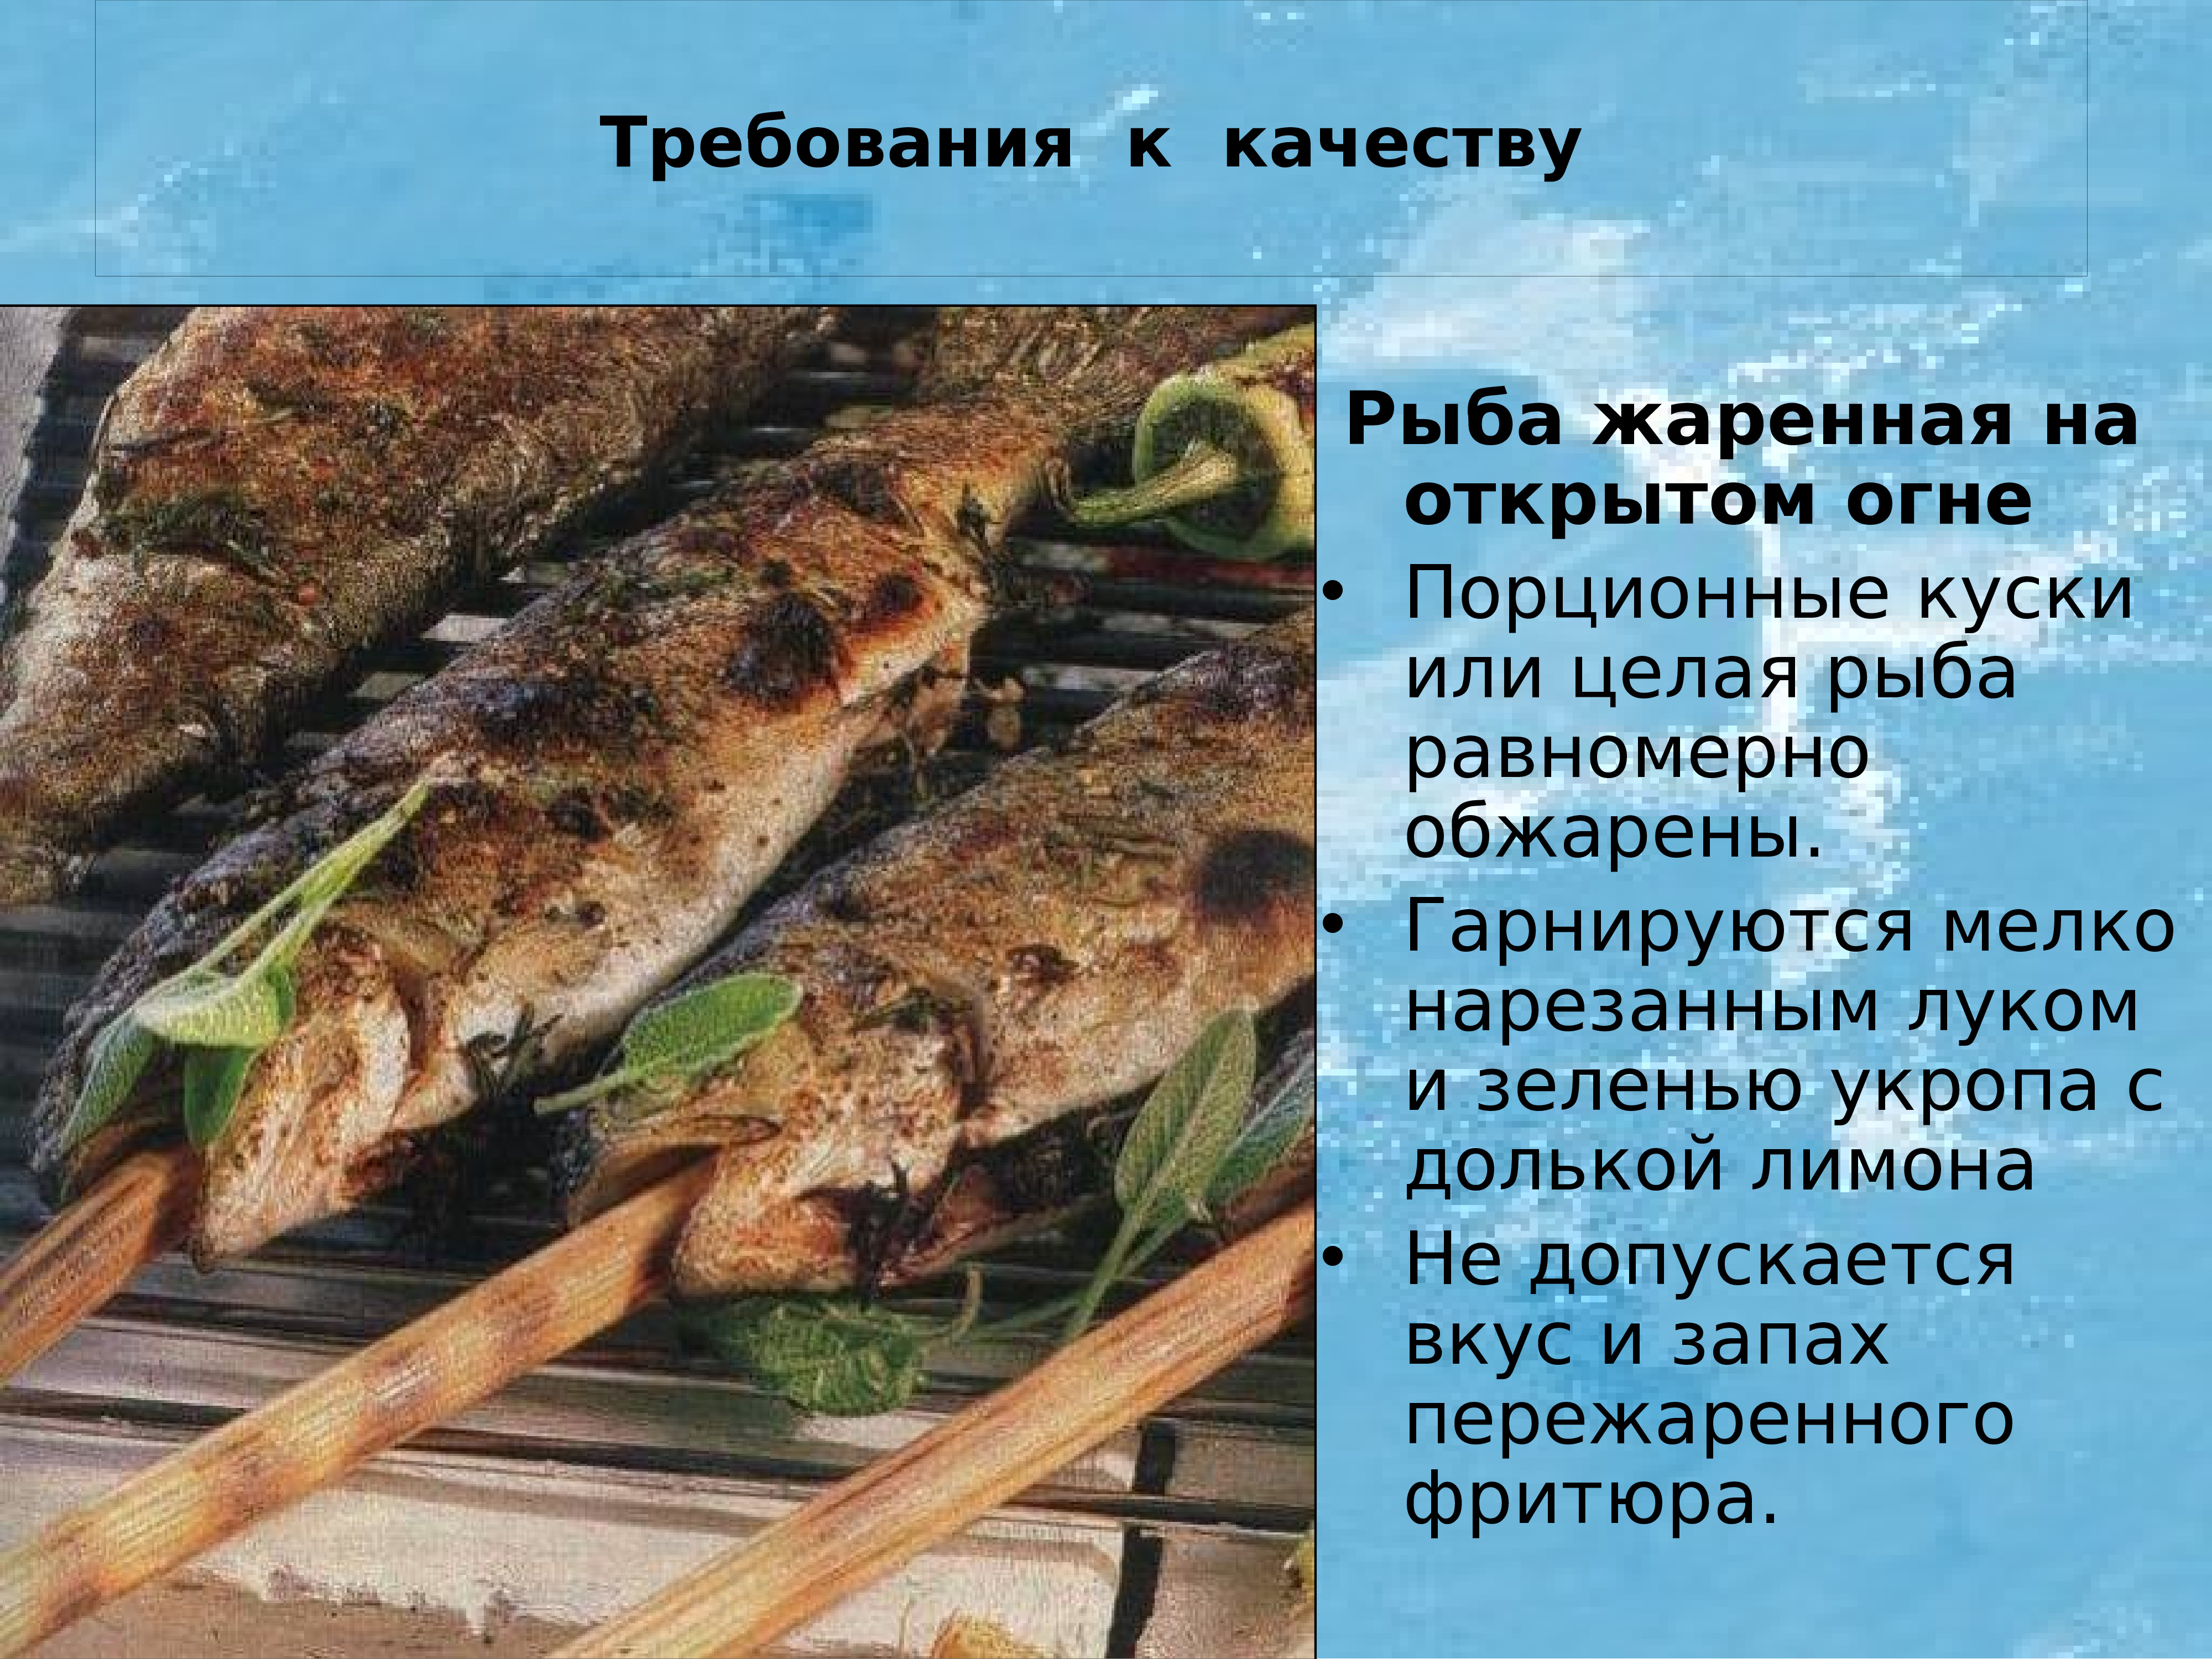 Используют в качестве готового. Требования к качеству жареной рыбы. Рыба жаренная на открытом огне. Основные требования к качеству рыбных блюд.. Требования к качеству приготовления жареной рыбы.